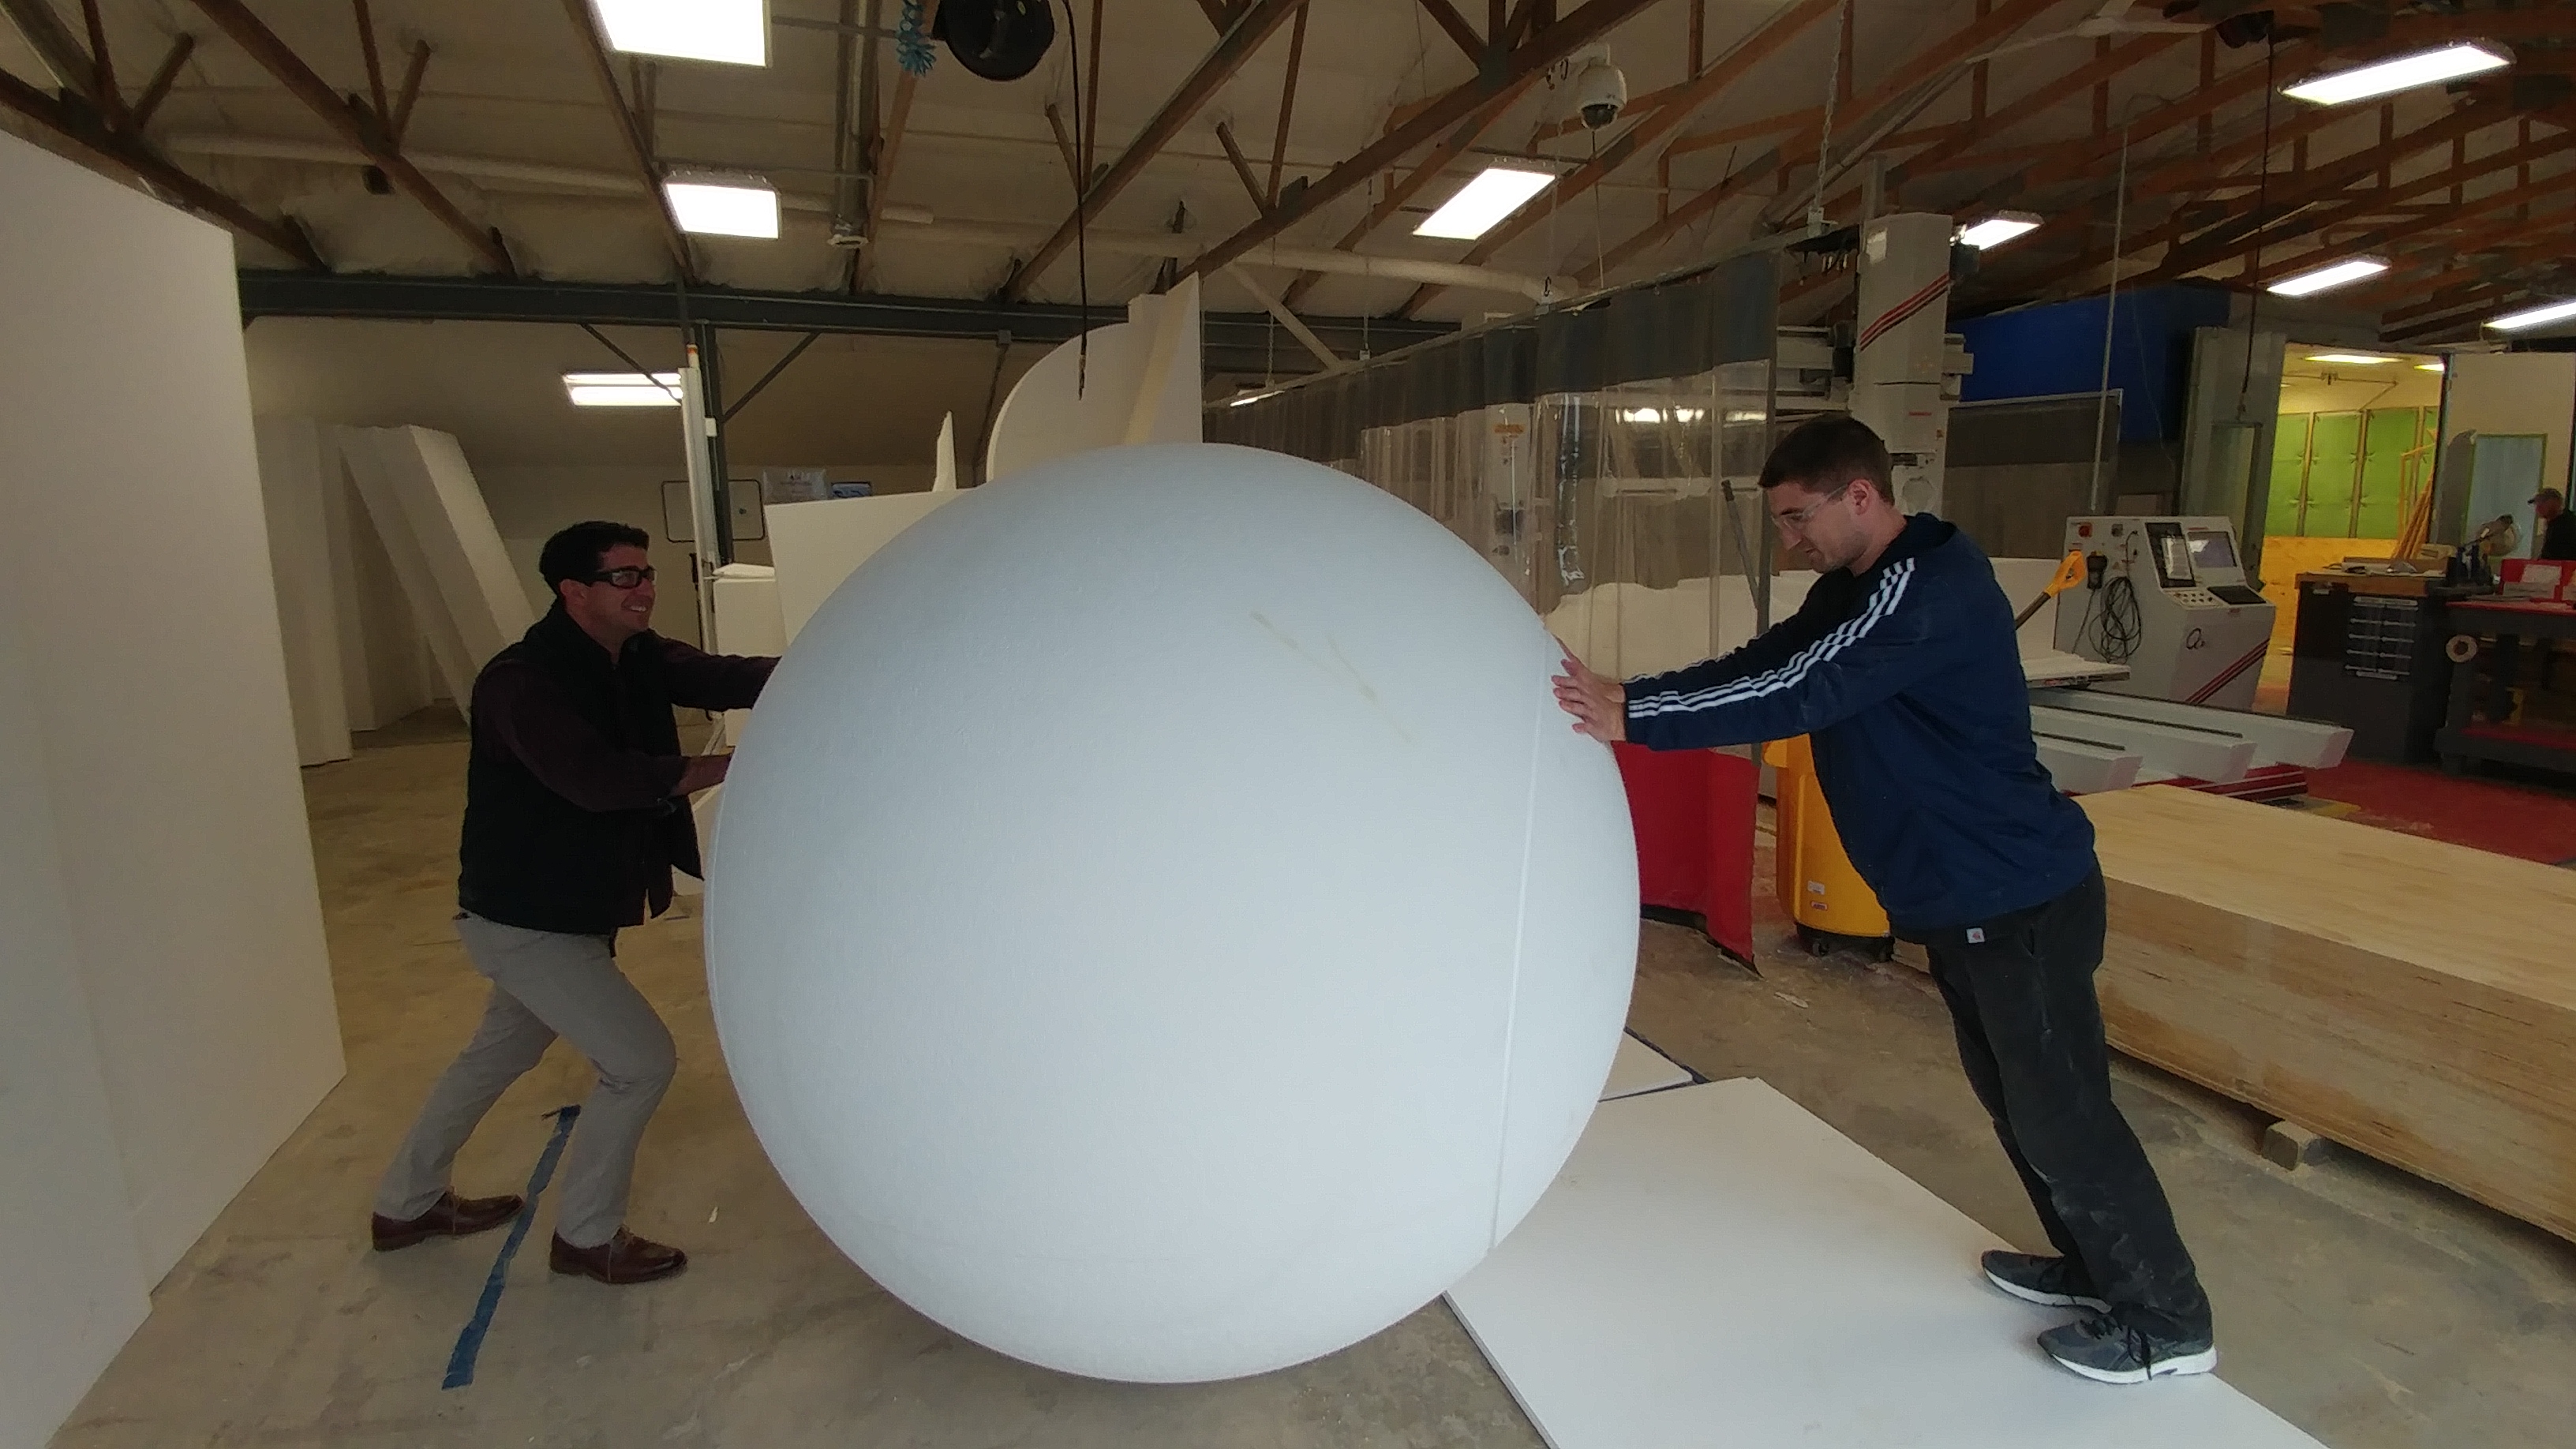 Giant 6 Foot Diameter Styrofoam Sphere